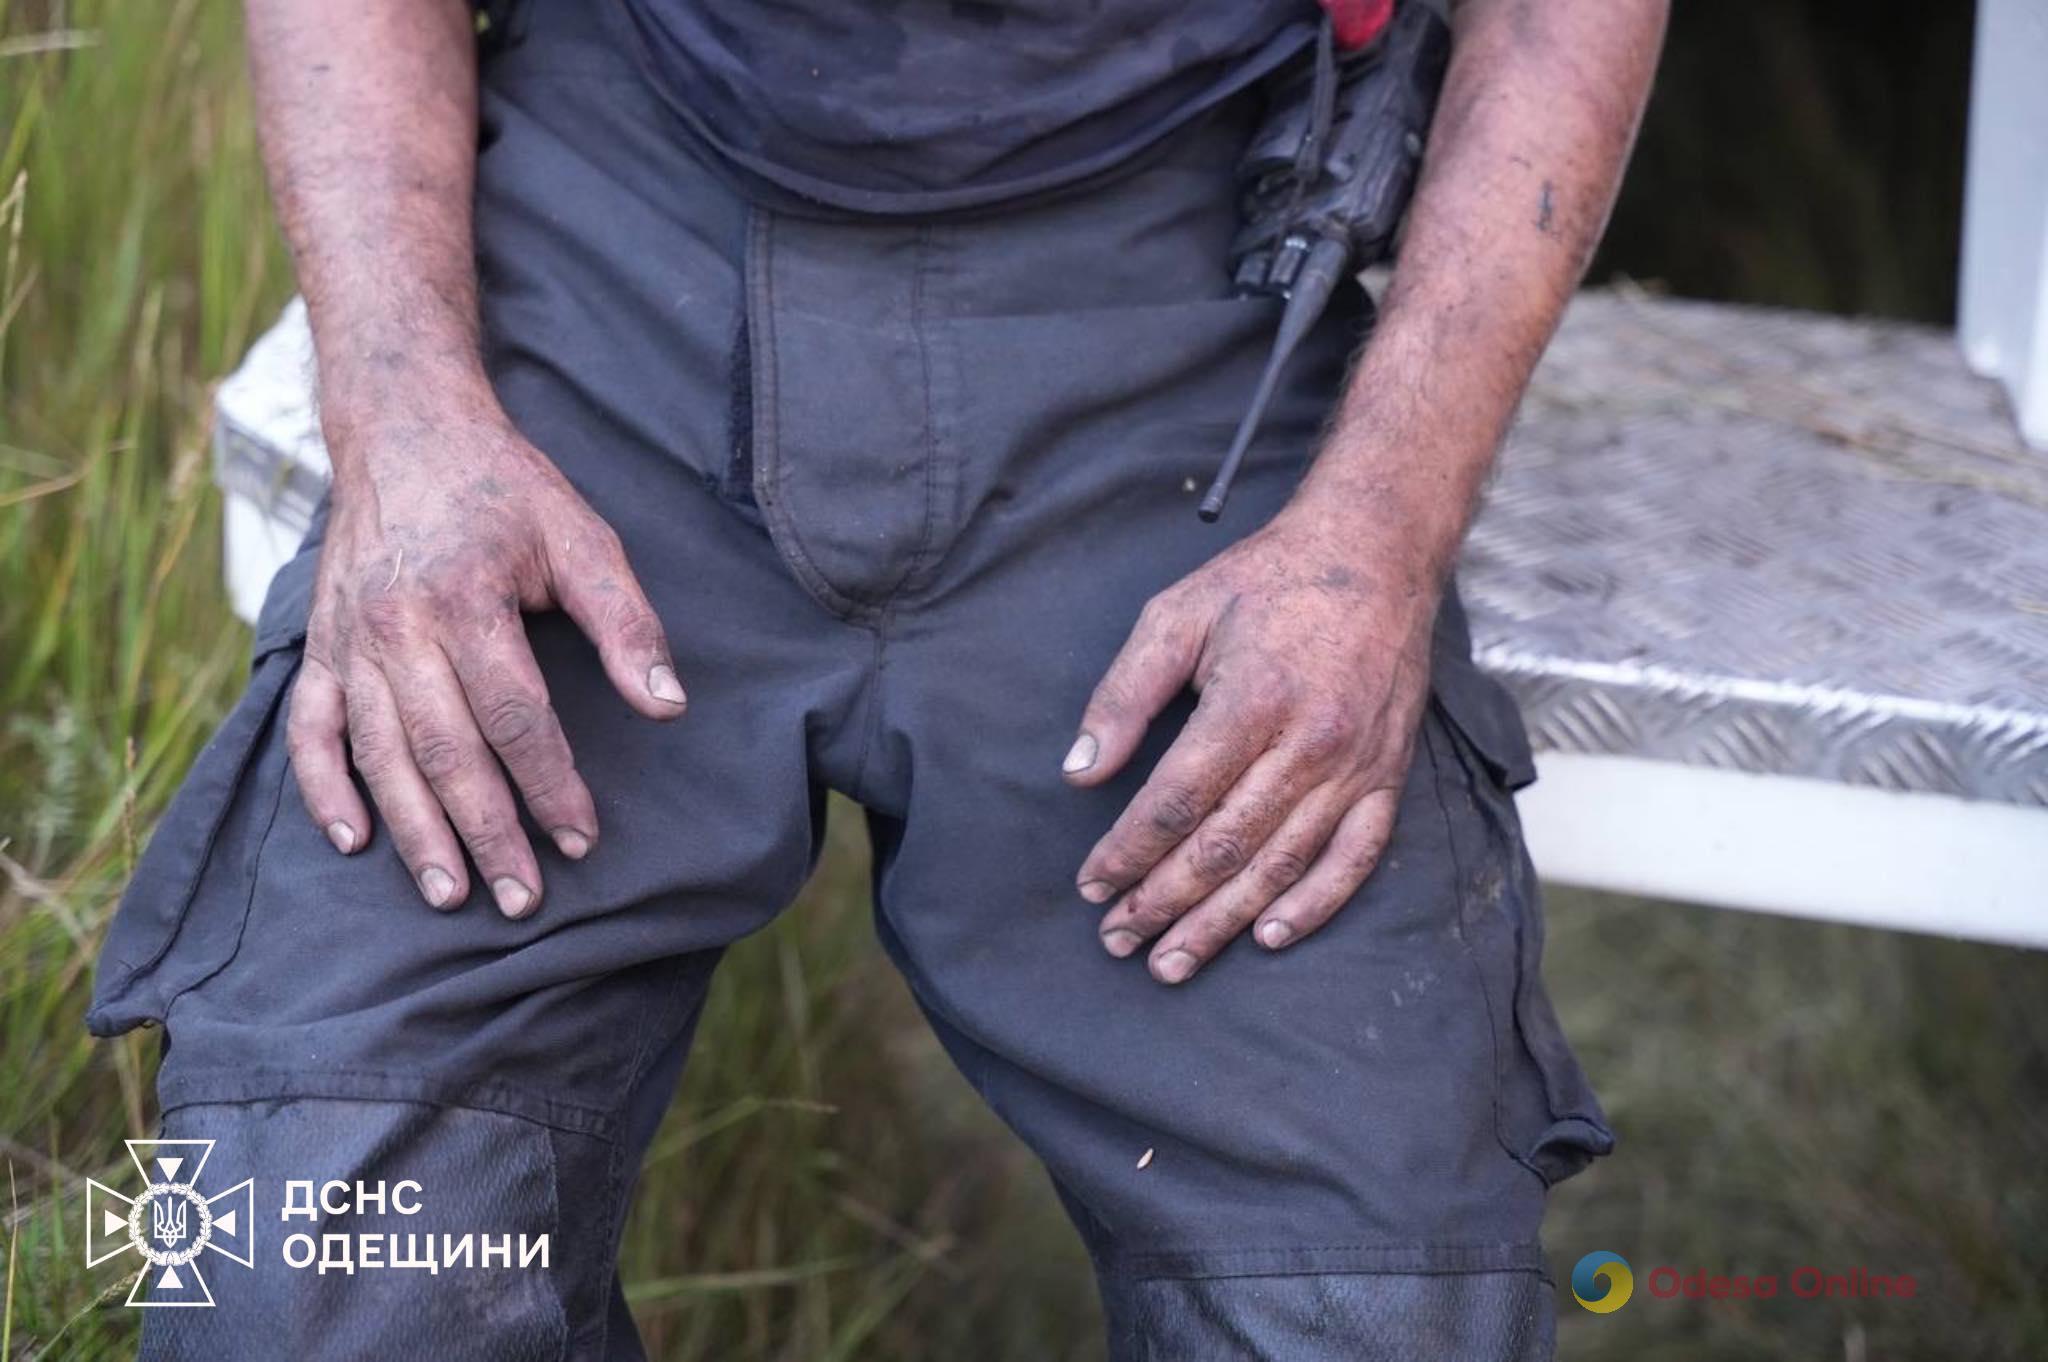 Больше шести часов одесские спасатели боролись с пожаром на полях орошения (фото, видео)